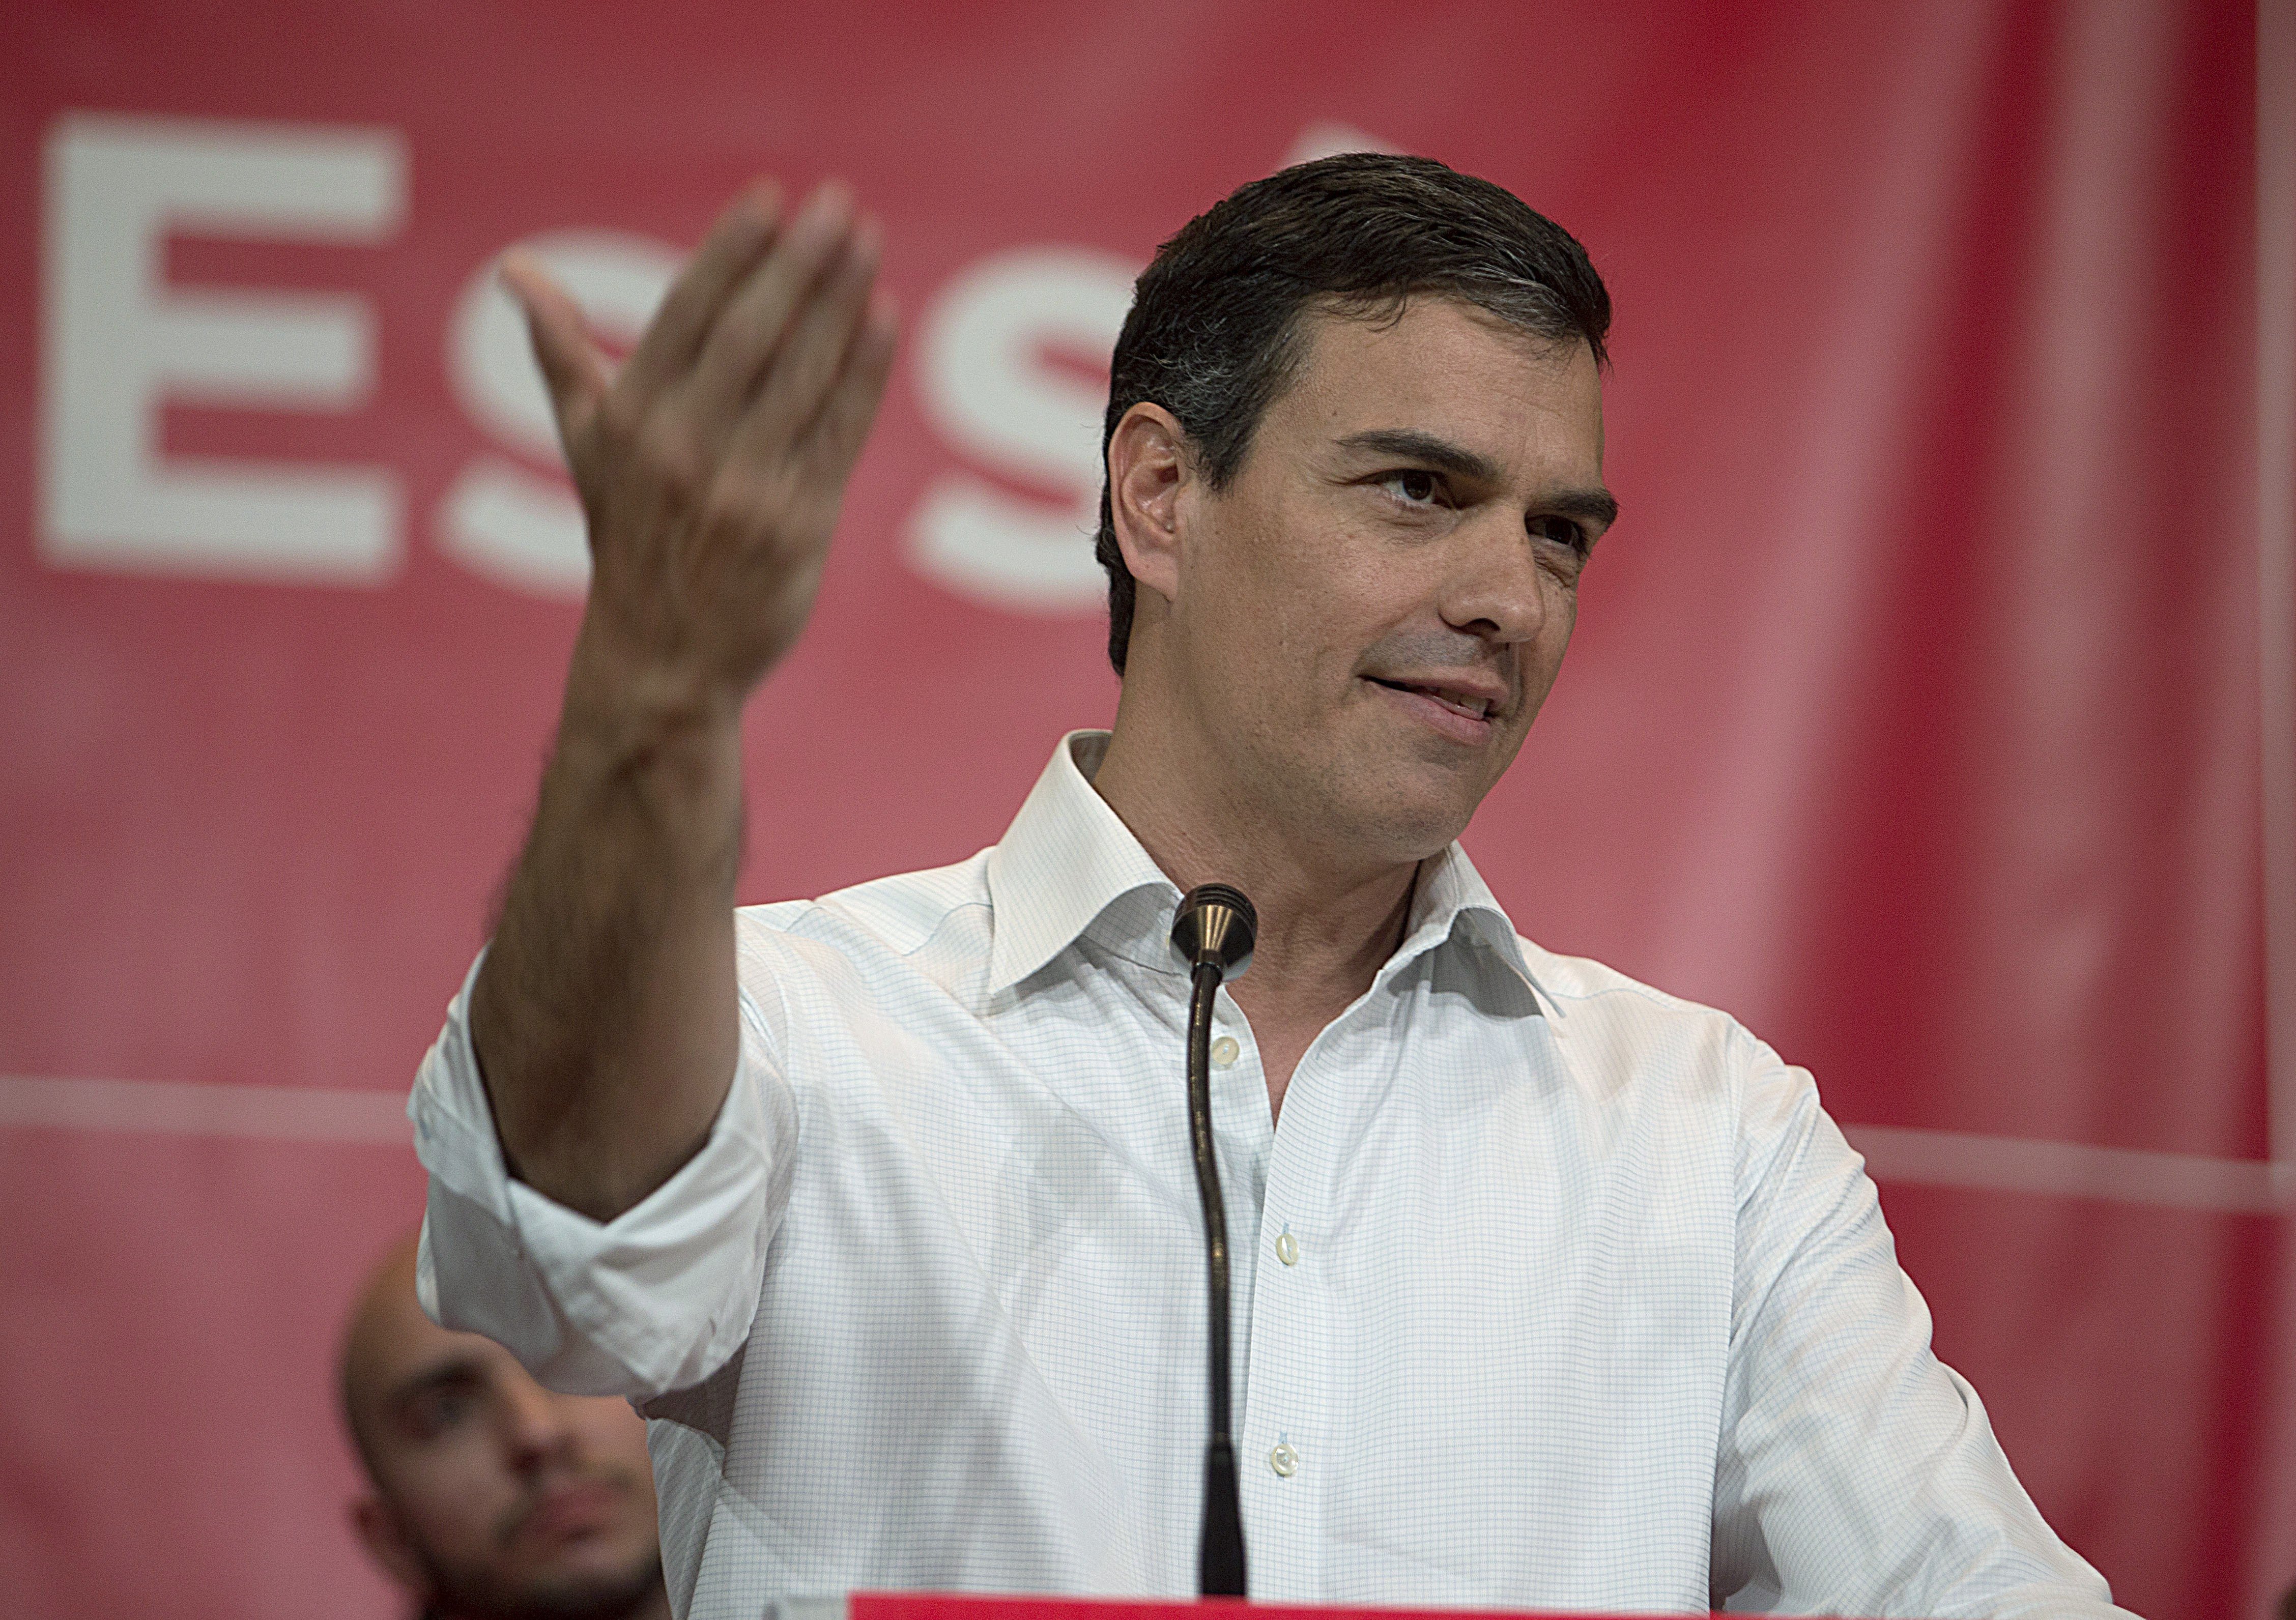 Pedro Sánchez aposta per Barcelona en la seva estratègia per reconquerir el PSOE